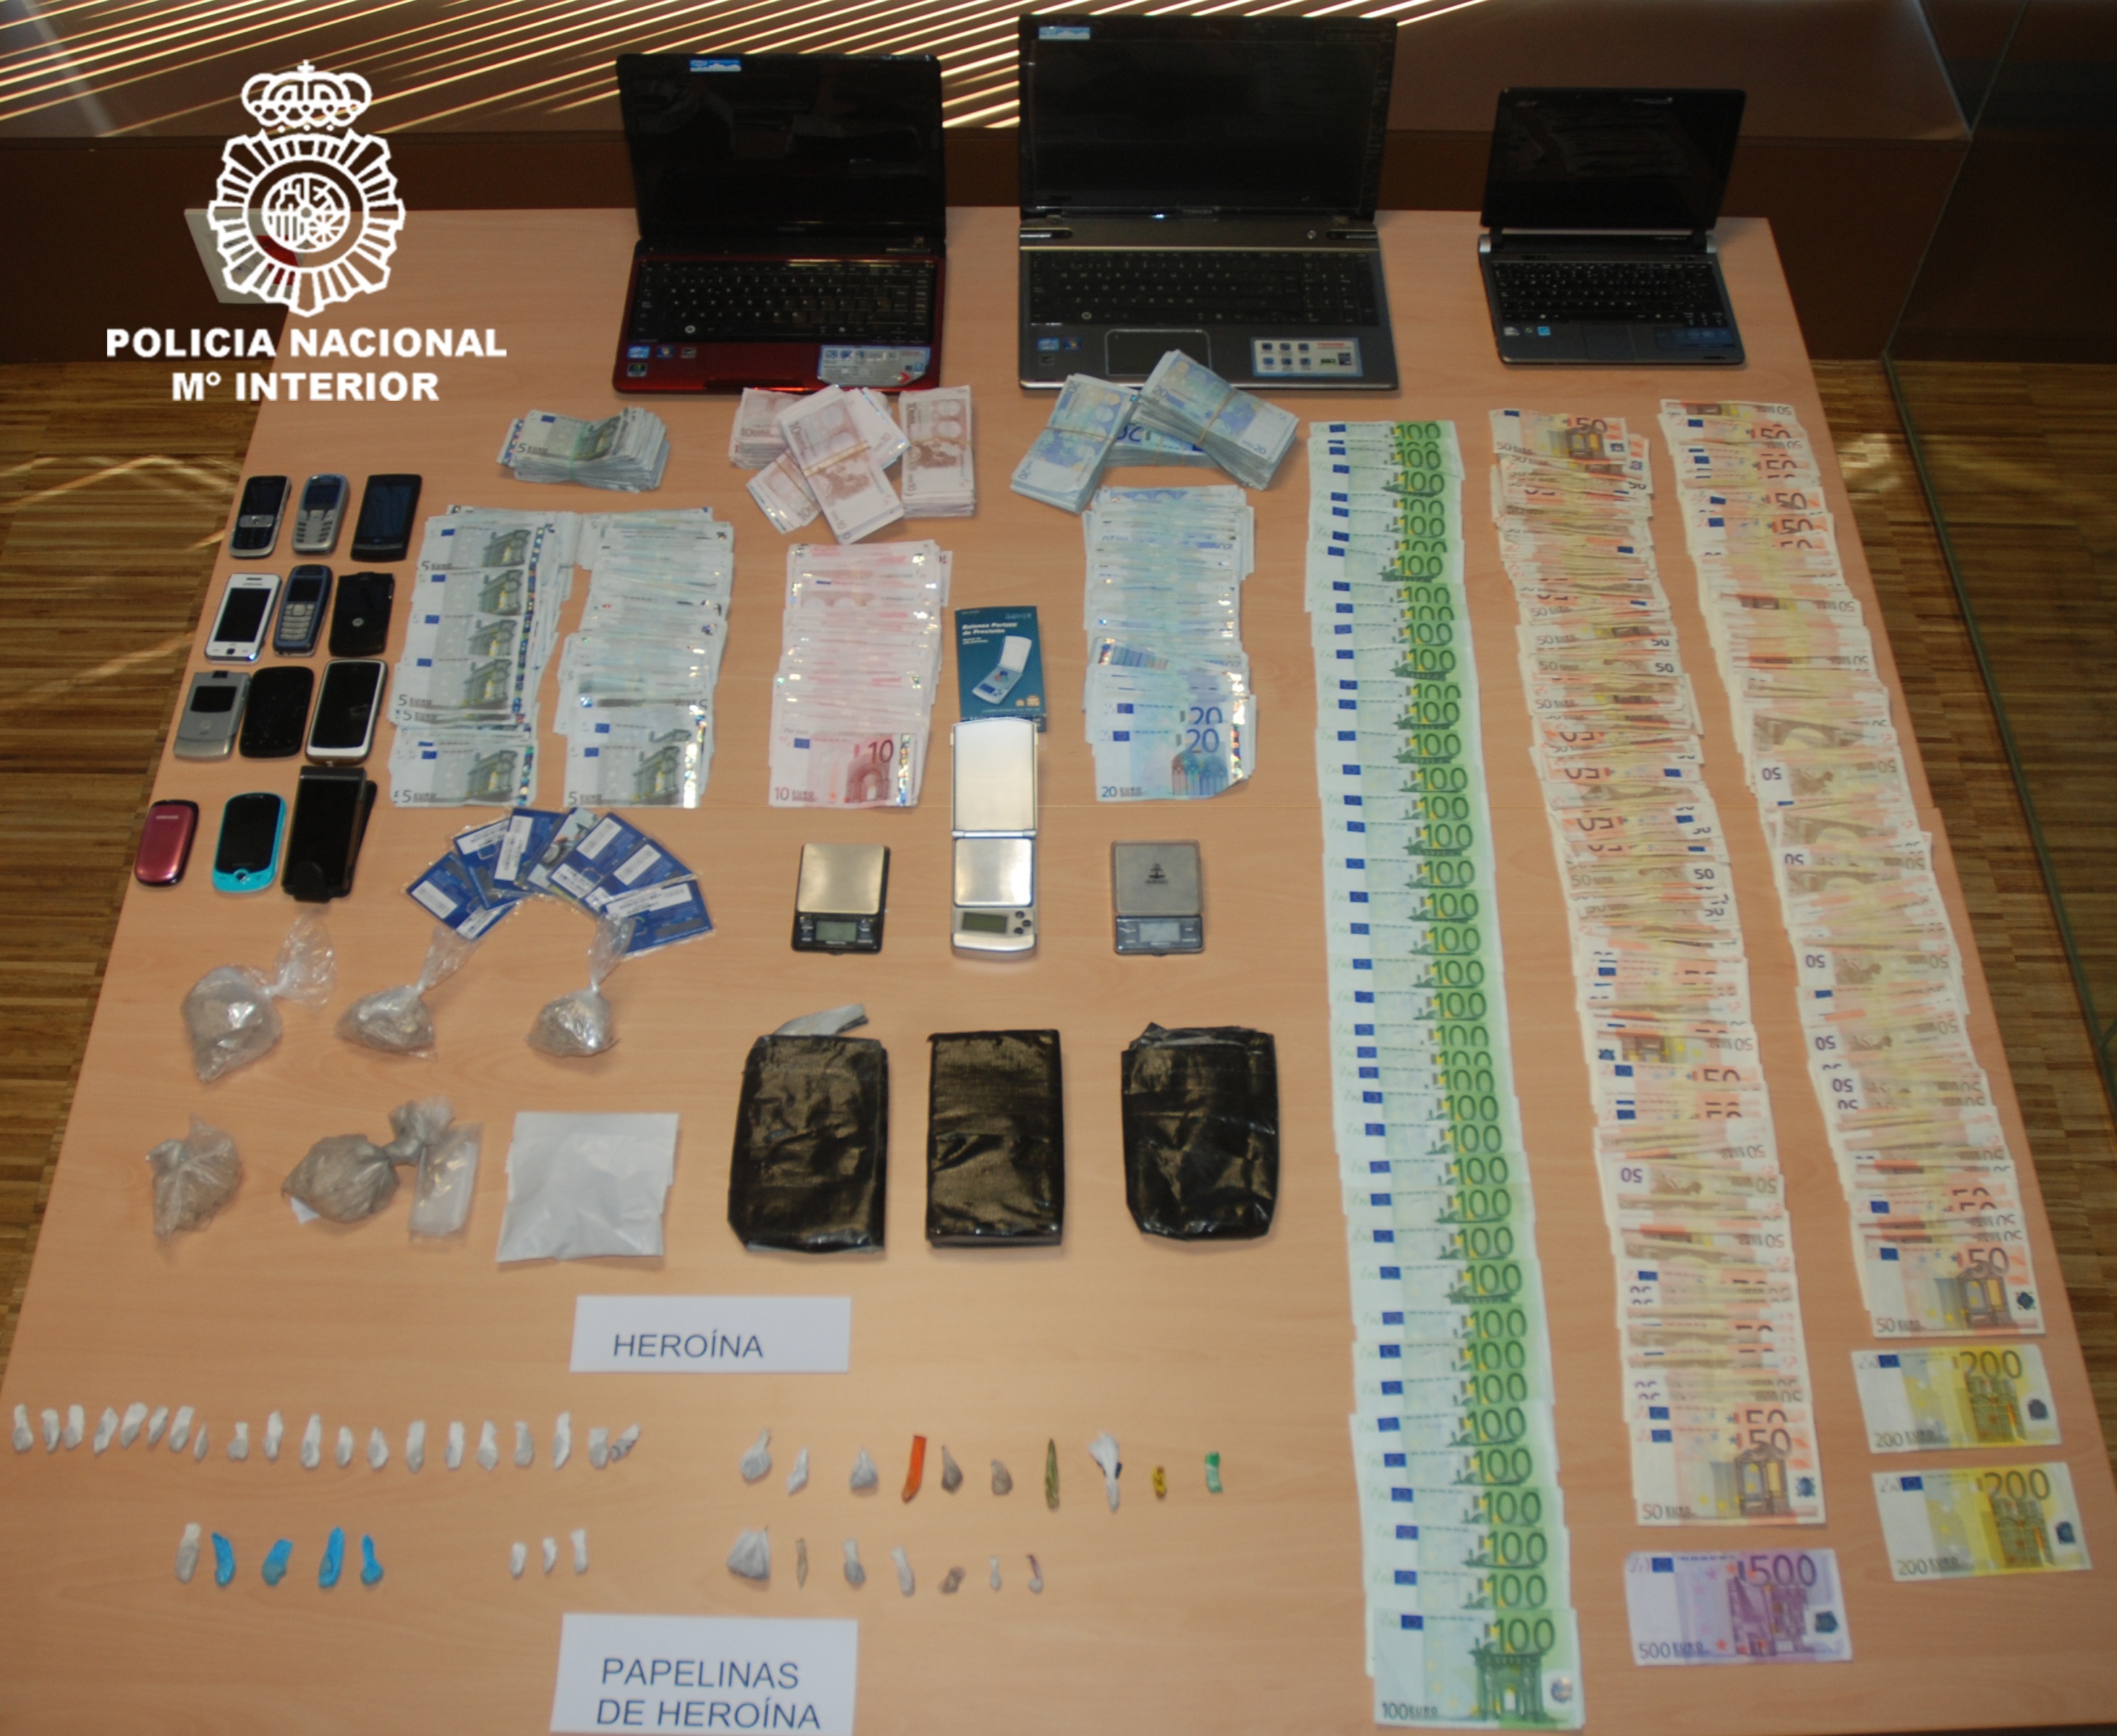 La Policía desarticula un grupo organizado dedicado a la venta de drogas en la comarca de Vigo y arresta a 9 personas